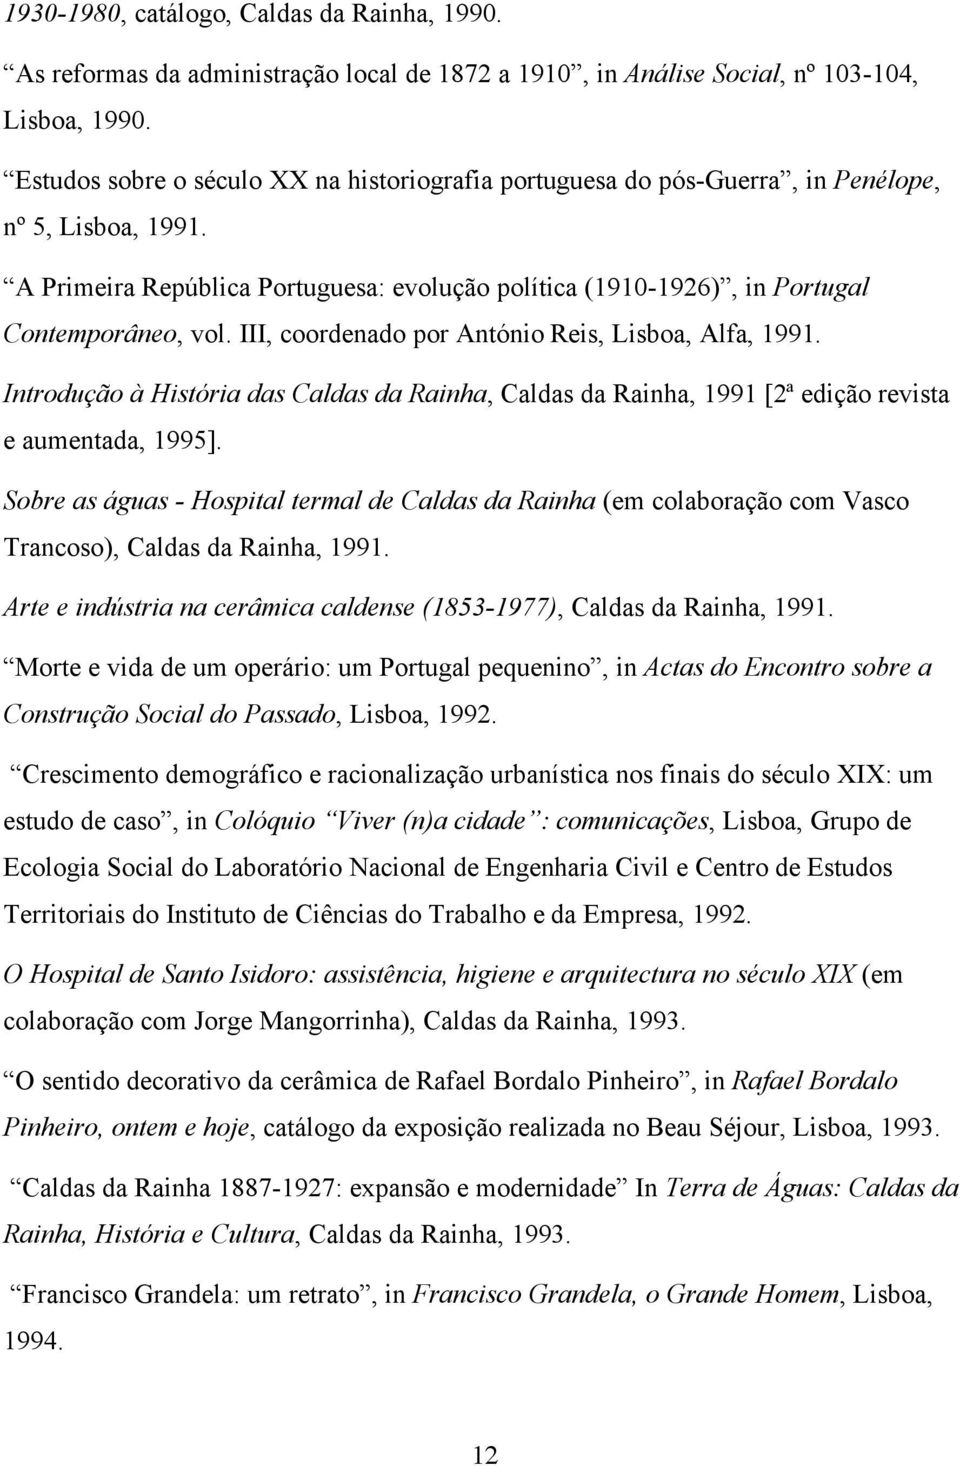 III, coordenado por António Reis, Lisboa, Alfa, 1991. Introdução à História das Caldas da Rainha, Caldas da Rainha, 1991 [2ª edição revista e aumentada, 1995].